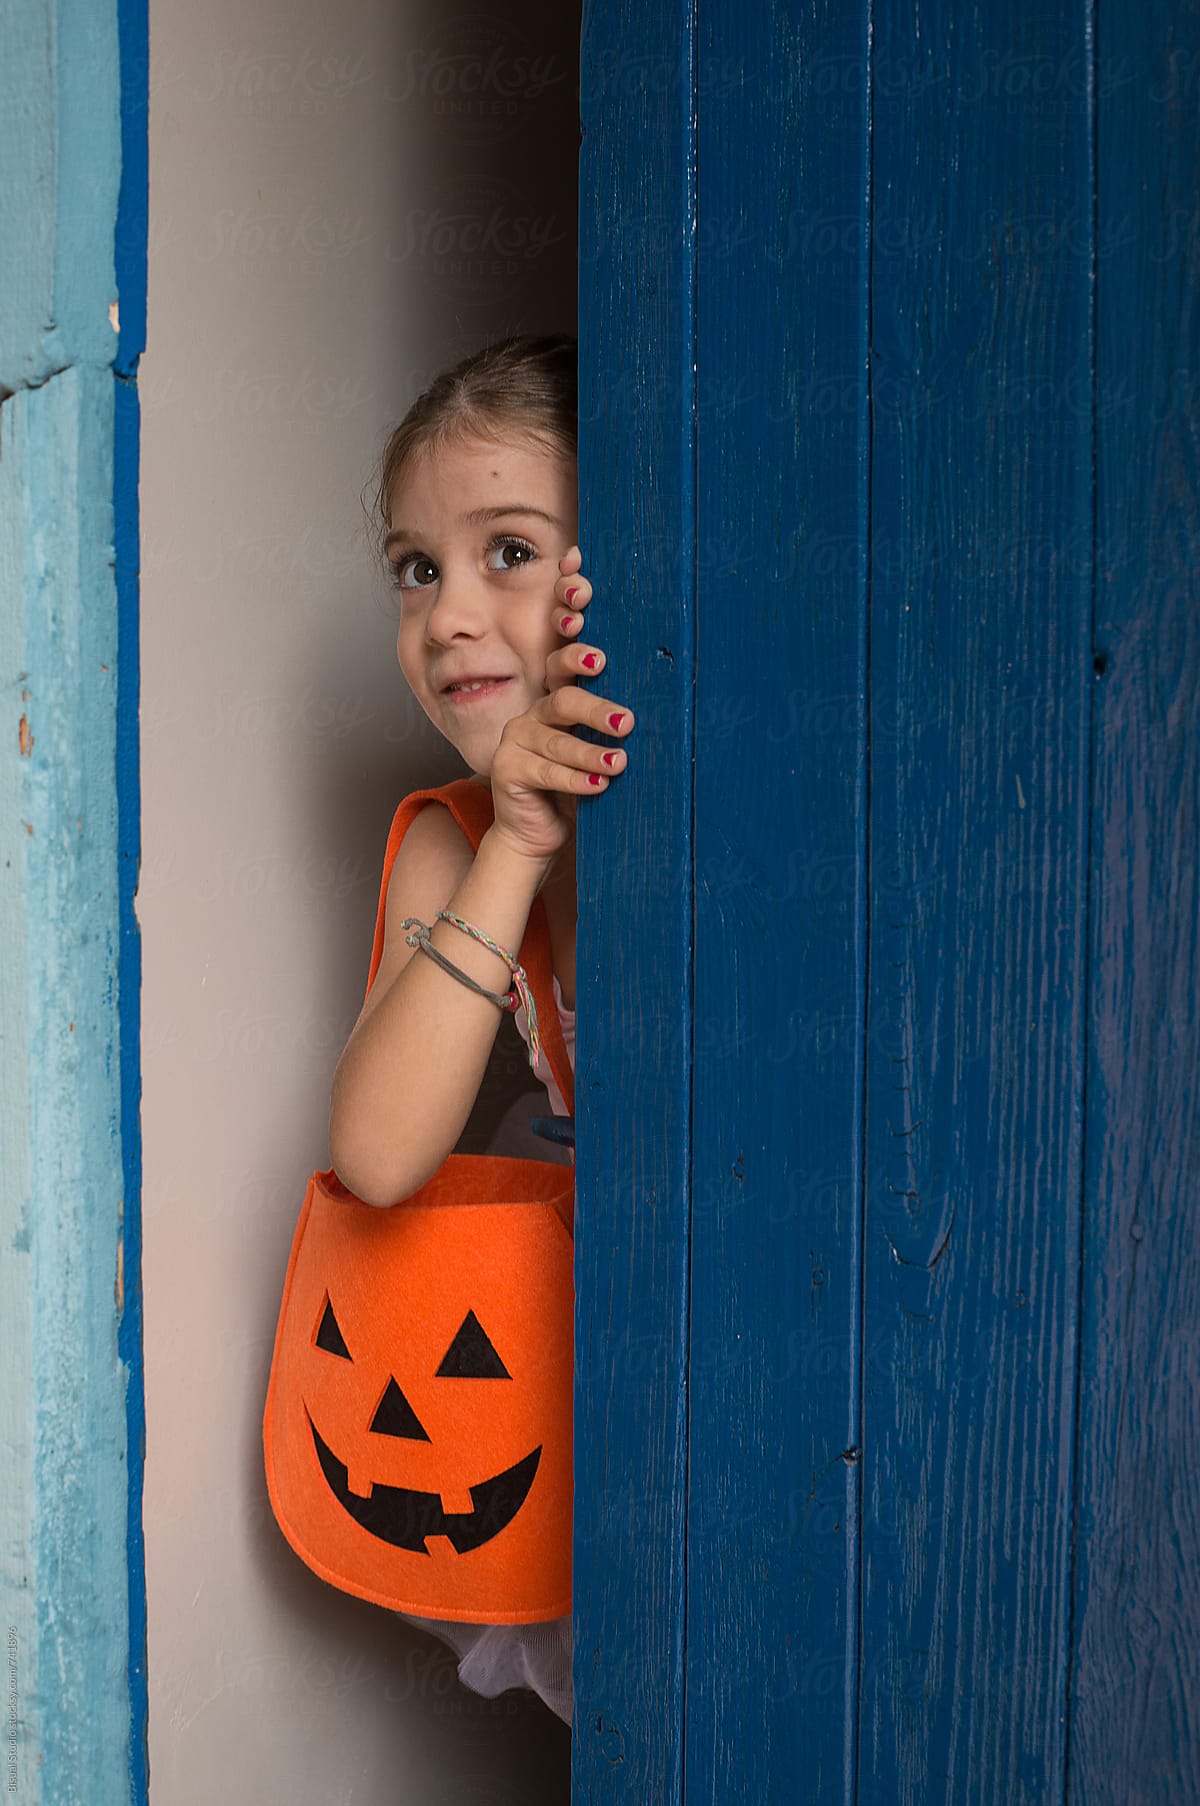 Little ballerina behind a blue door with a halloween bag